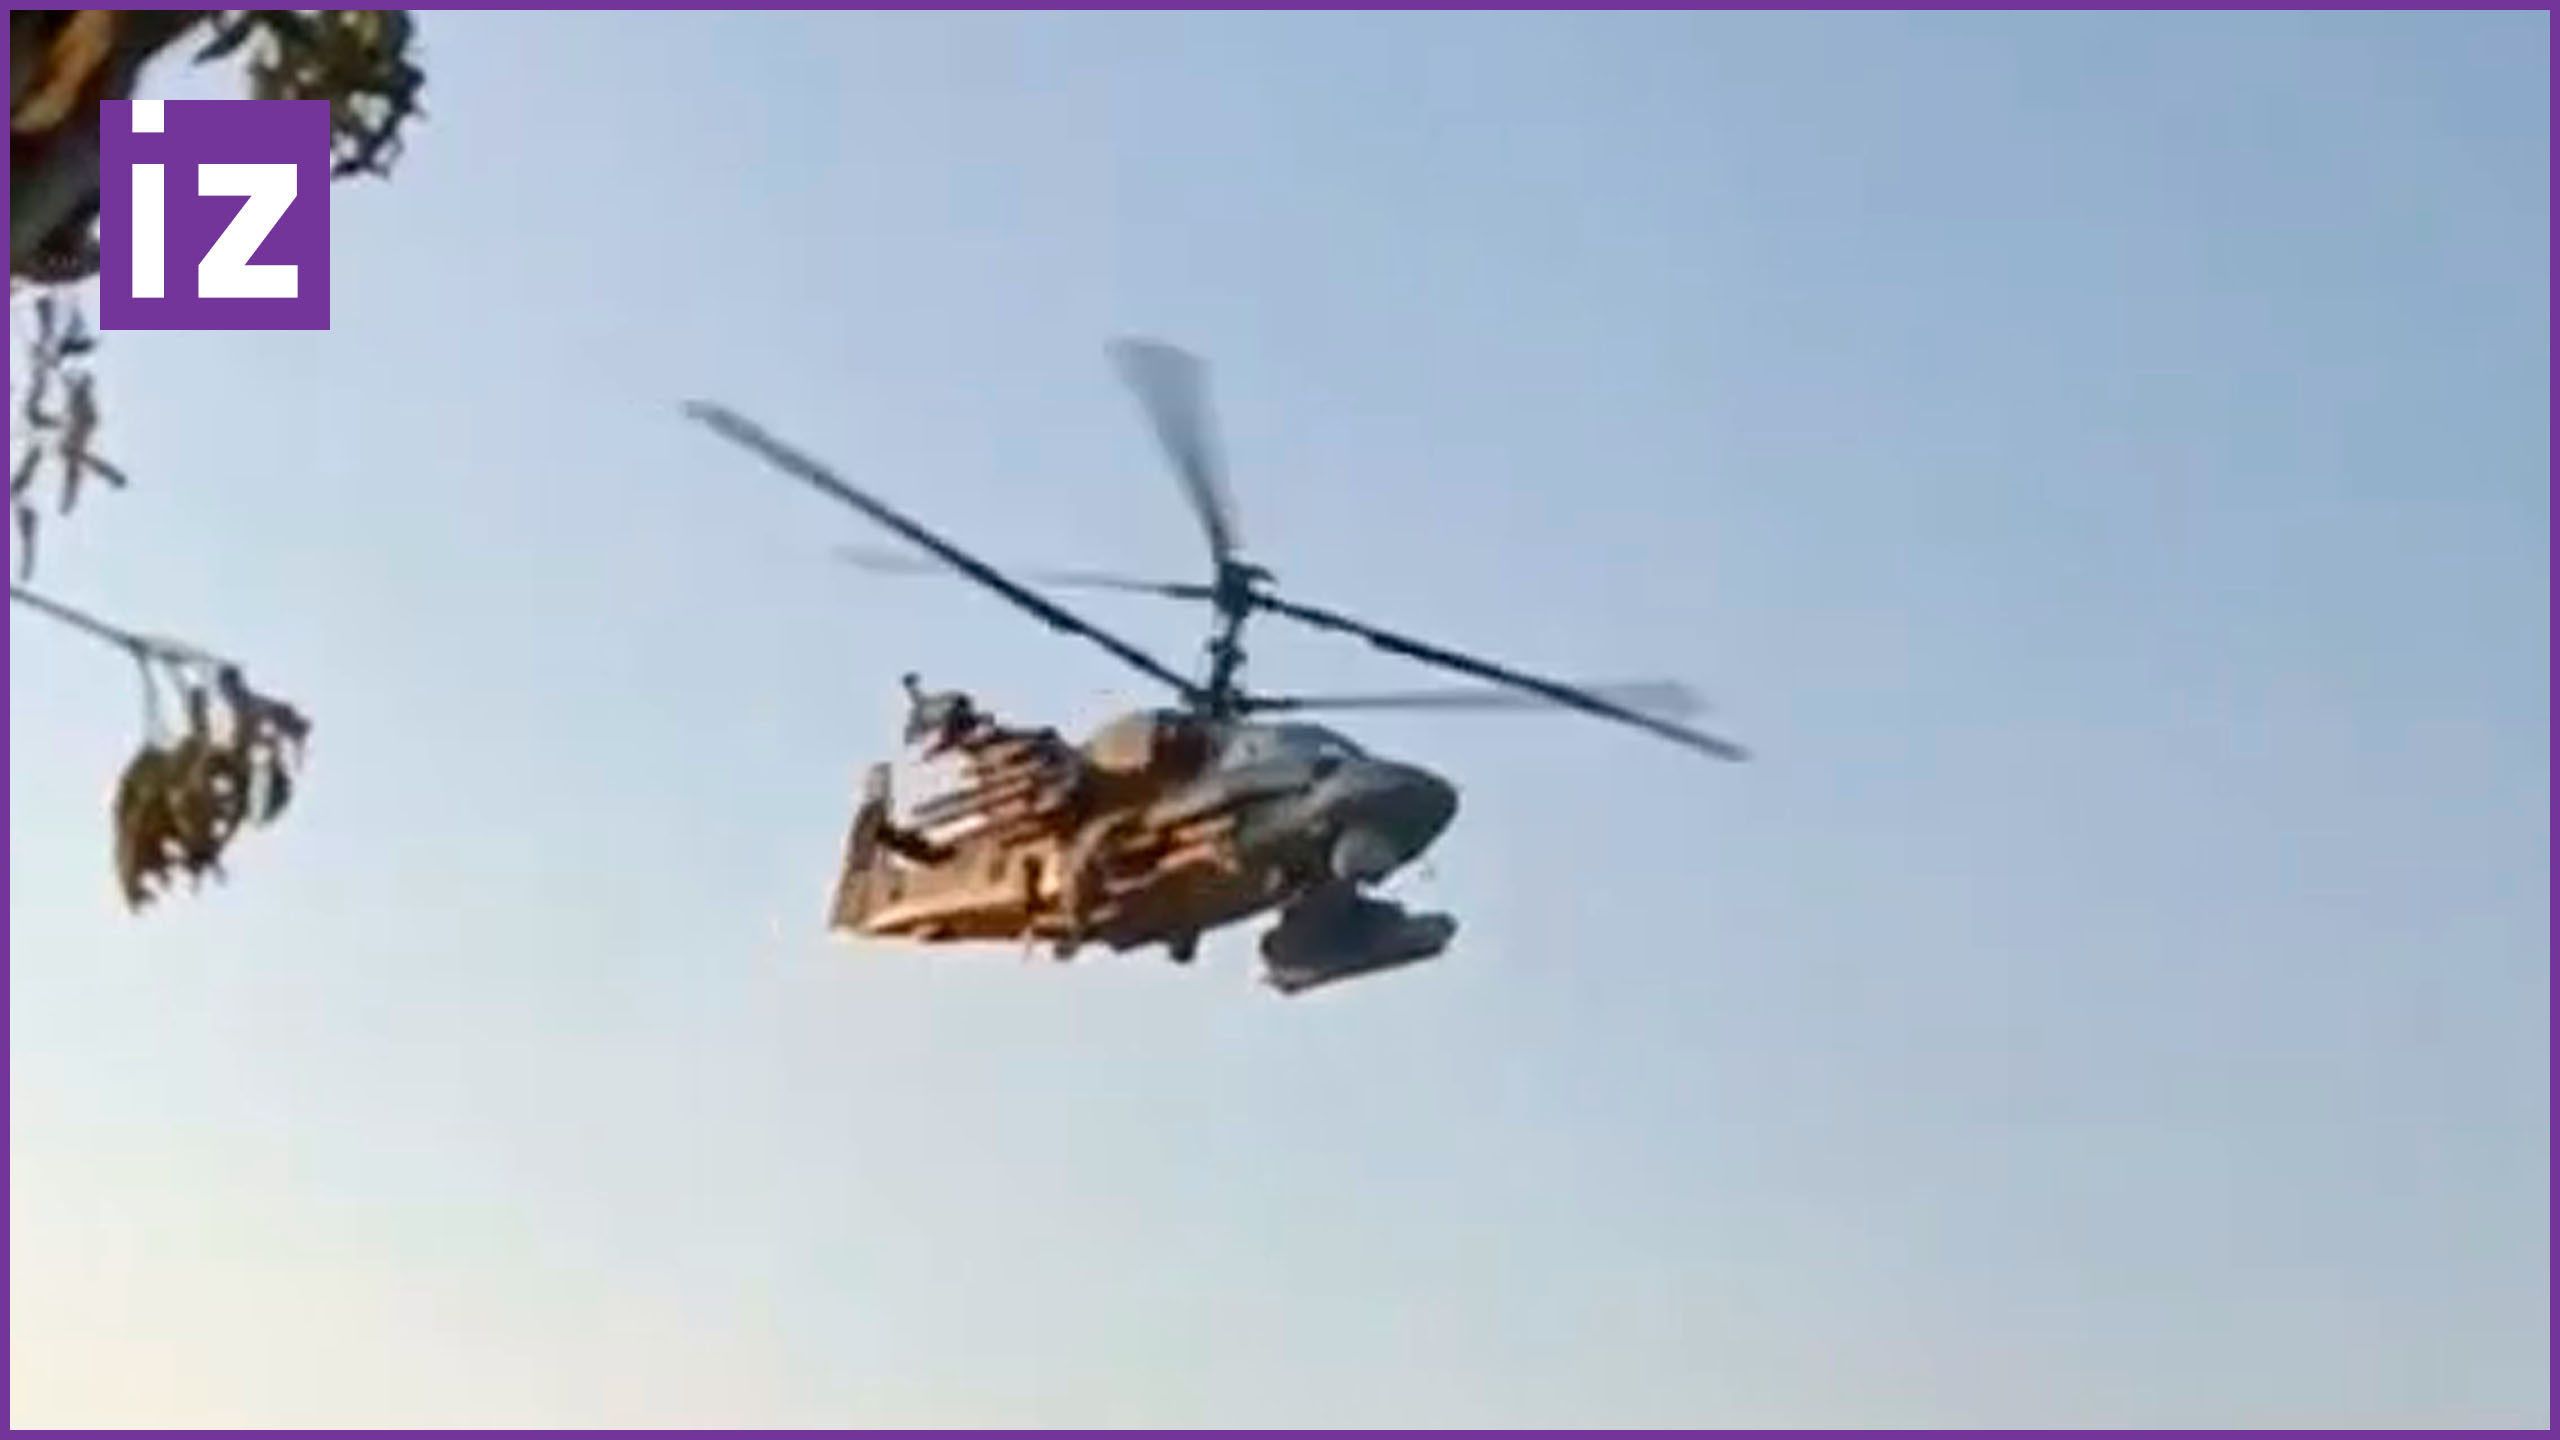 Новости сво 05.03 24. Фото пролета вертолета над ополченцами ботлихских событий.